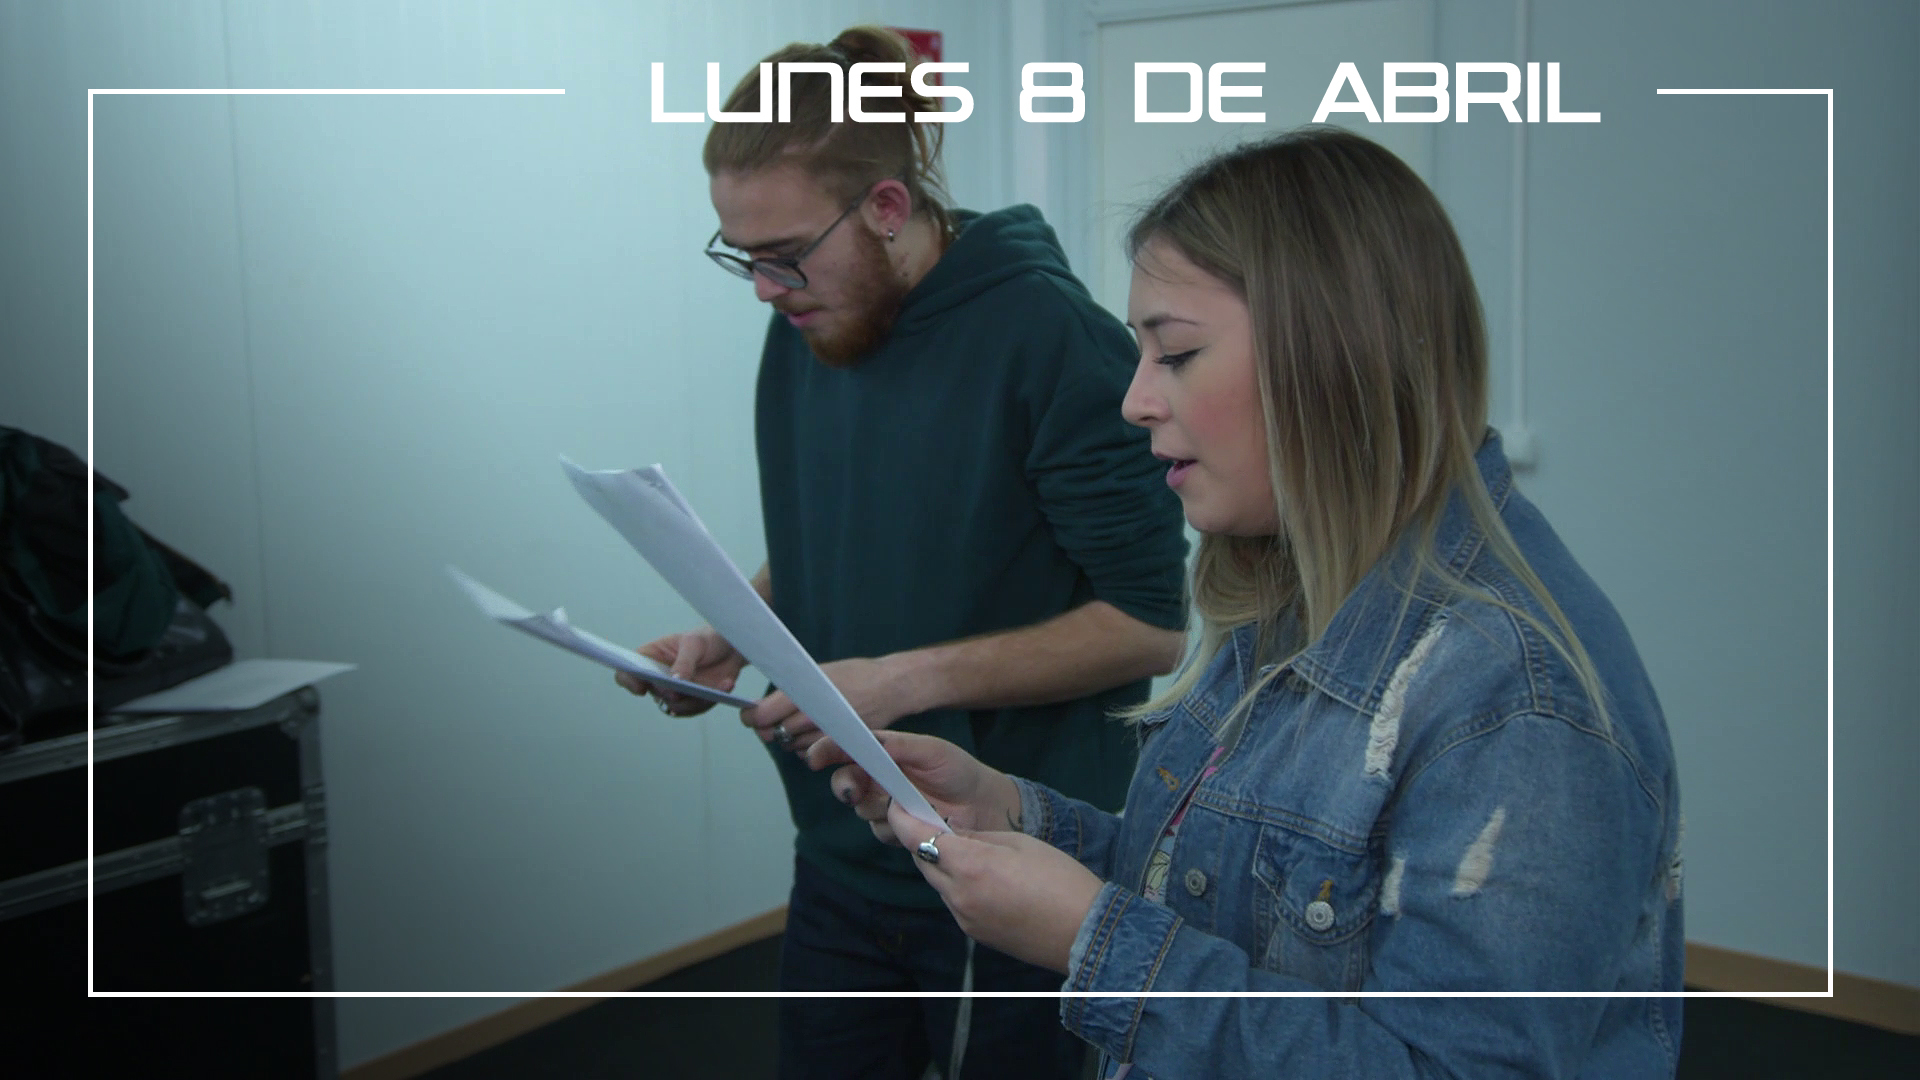 Lunes 8 de abril Andrés Martín y María Espinosa ensayan la canción 'La Plata' de Juanes